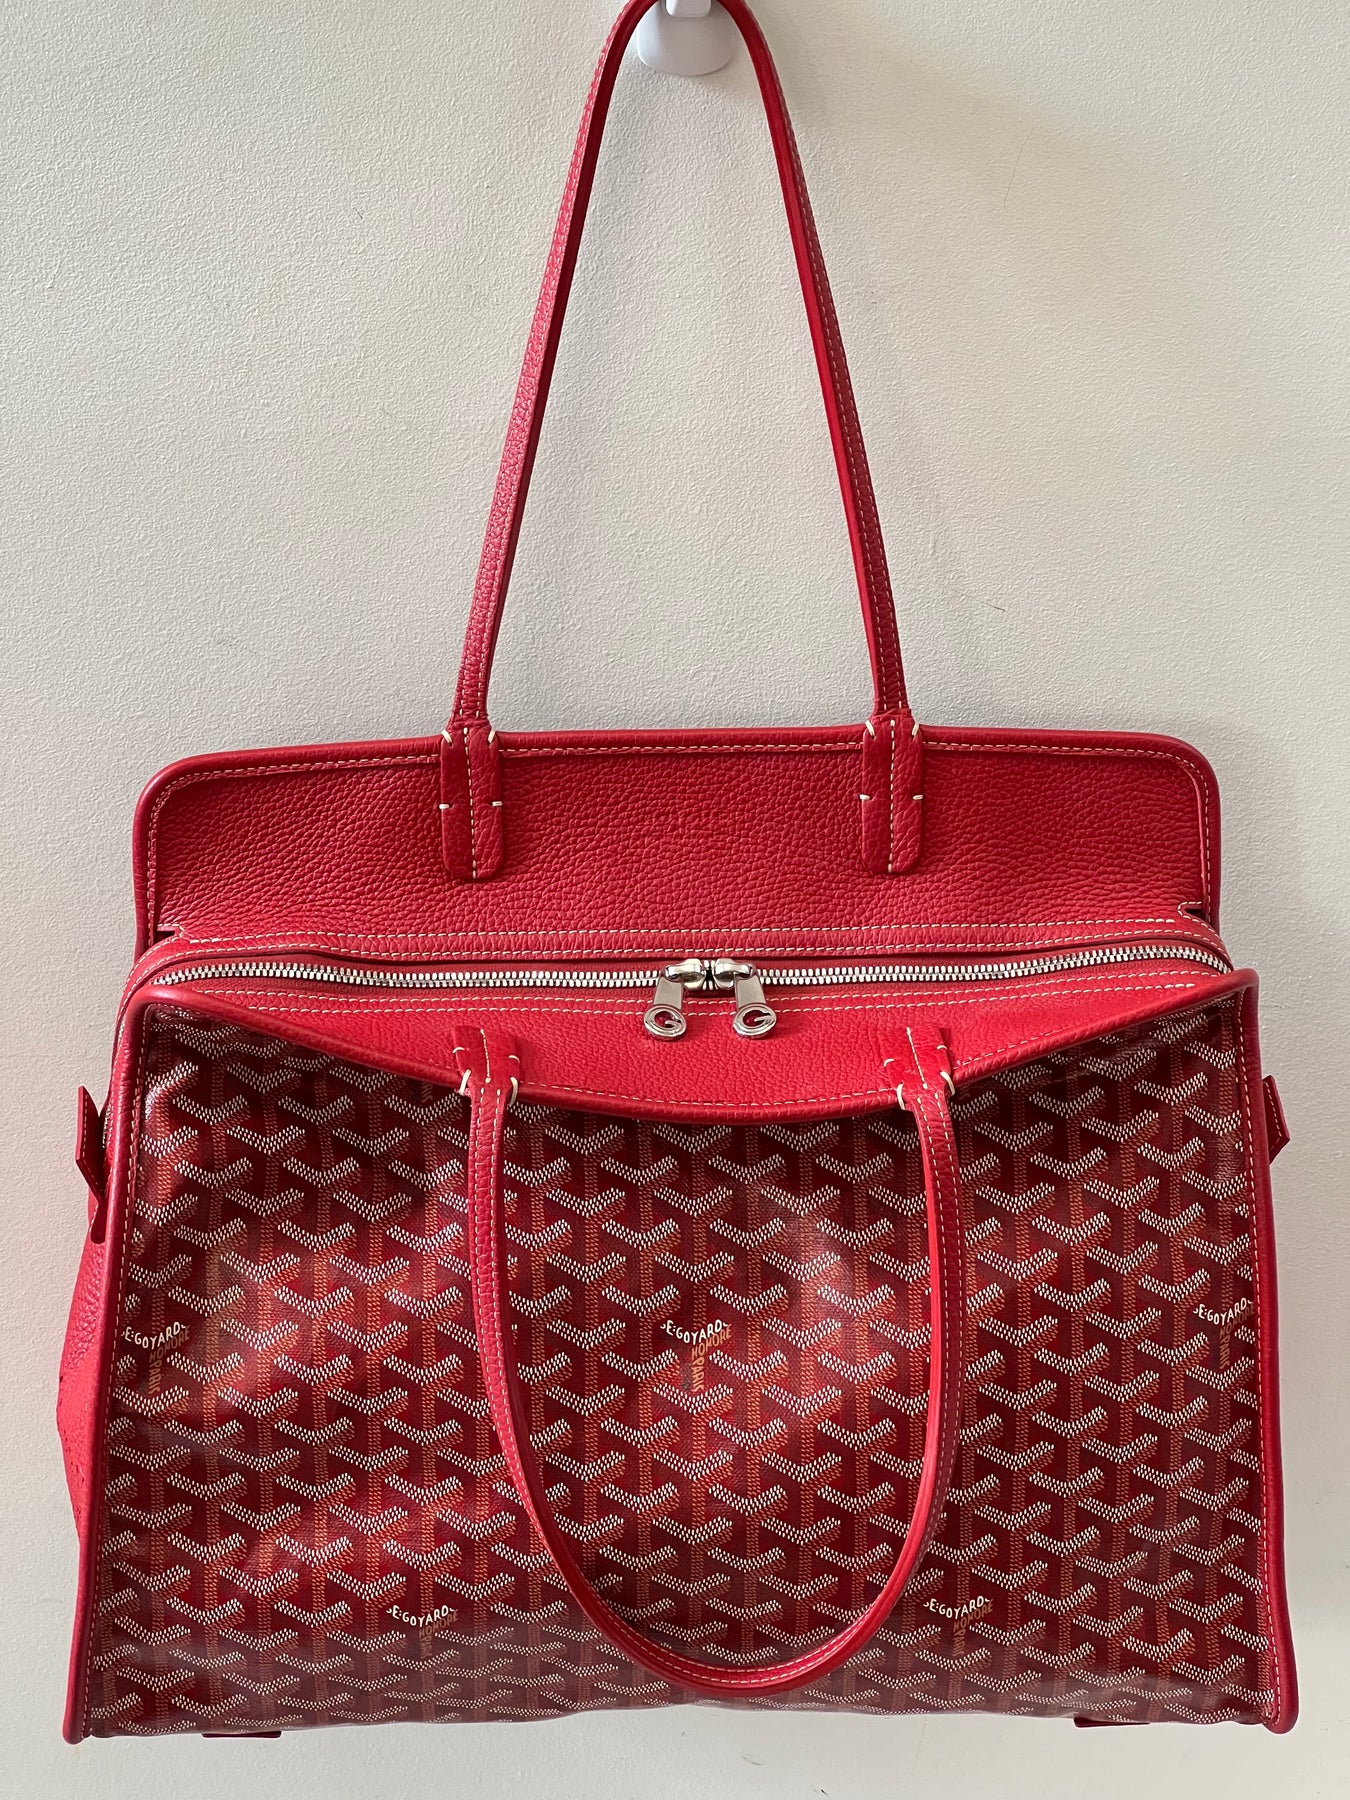 GOYARD Women's Hardy Bag in Red